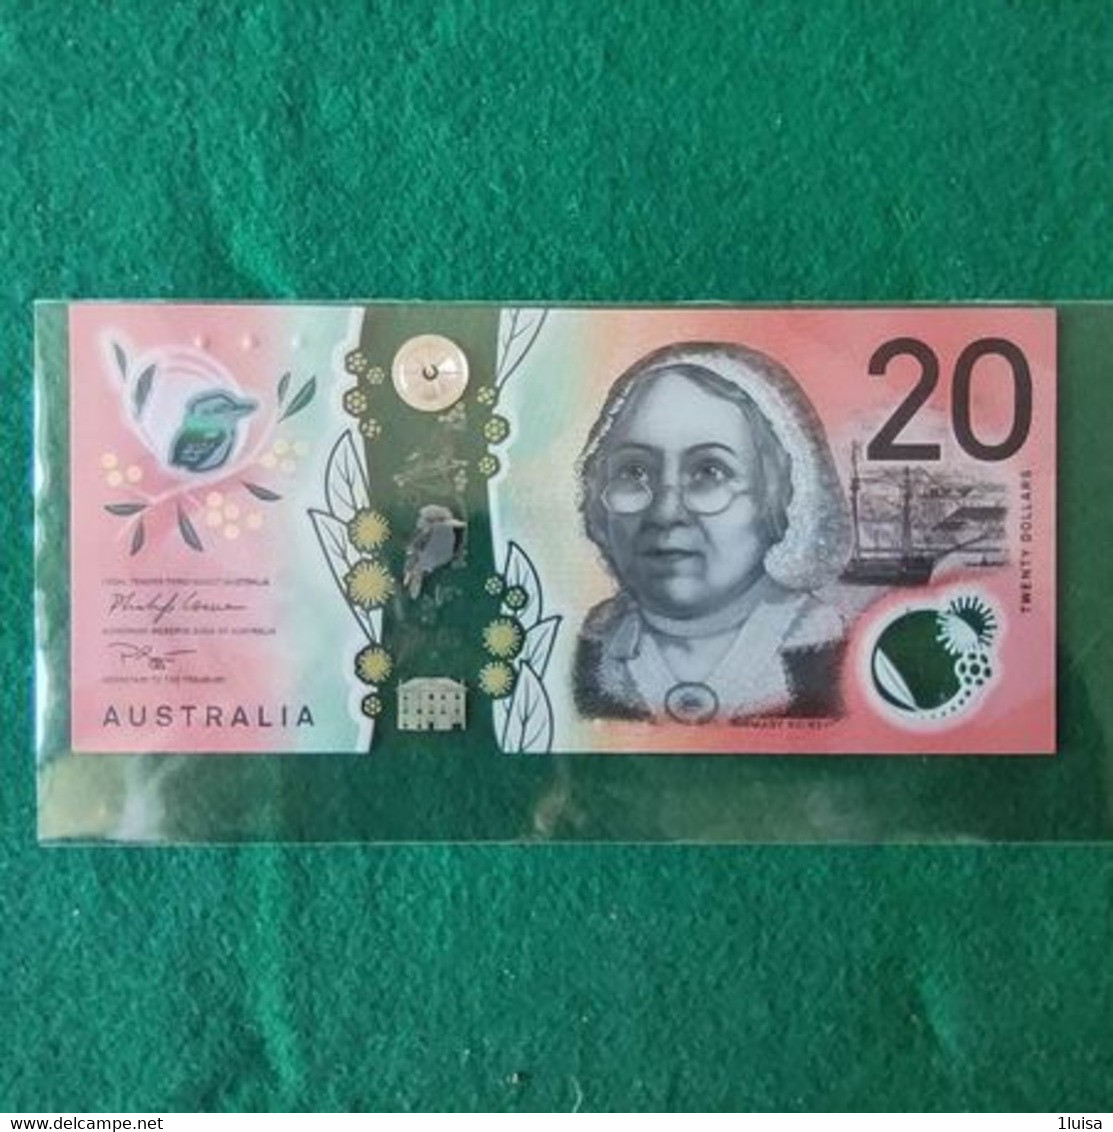 Australia 20 Dollars 2005 - 1988 (10$ Polymeerbiljetten)